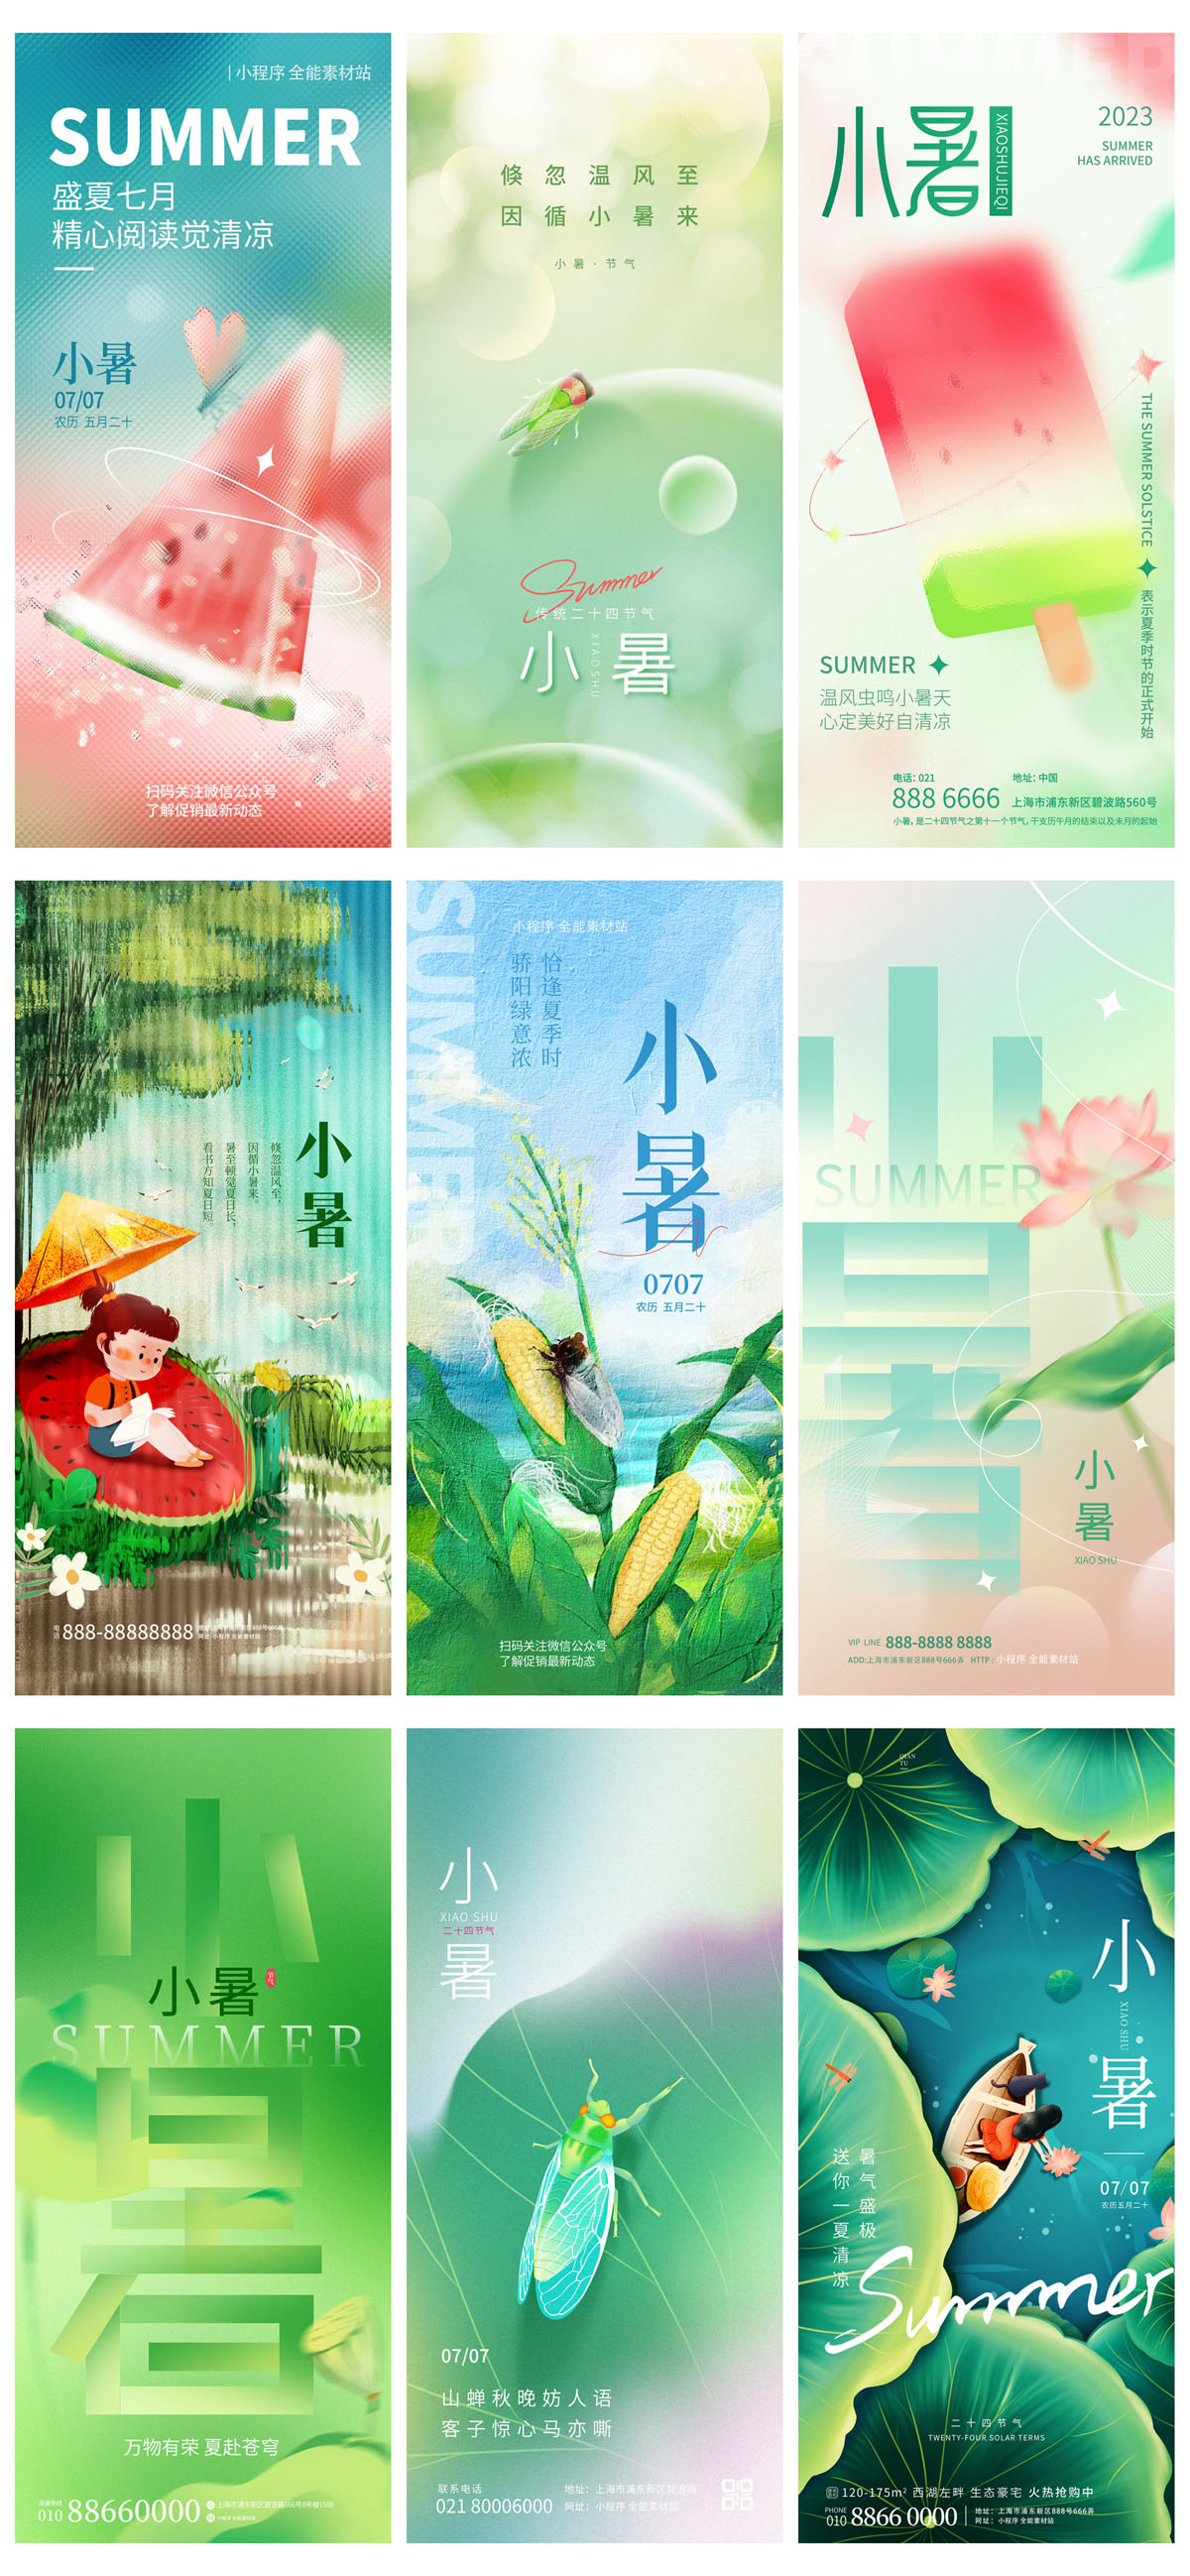 93款中国风24节气小暑宣传海报PSD模板 设计素材 第14张